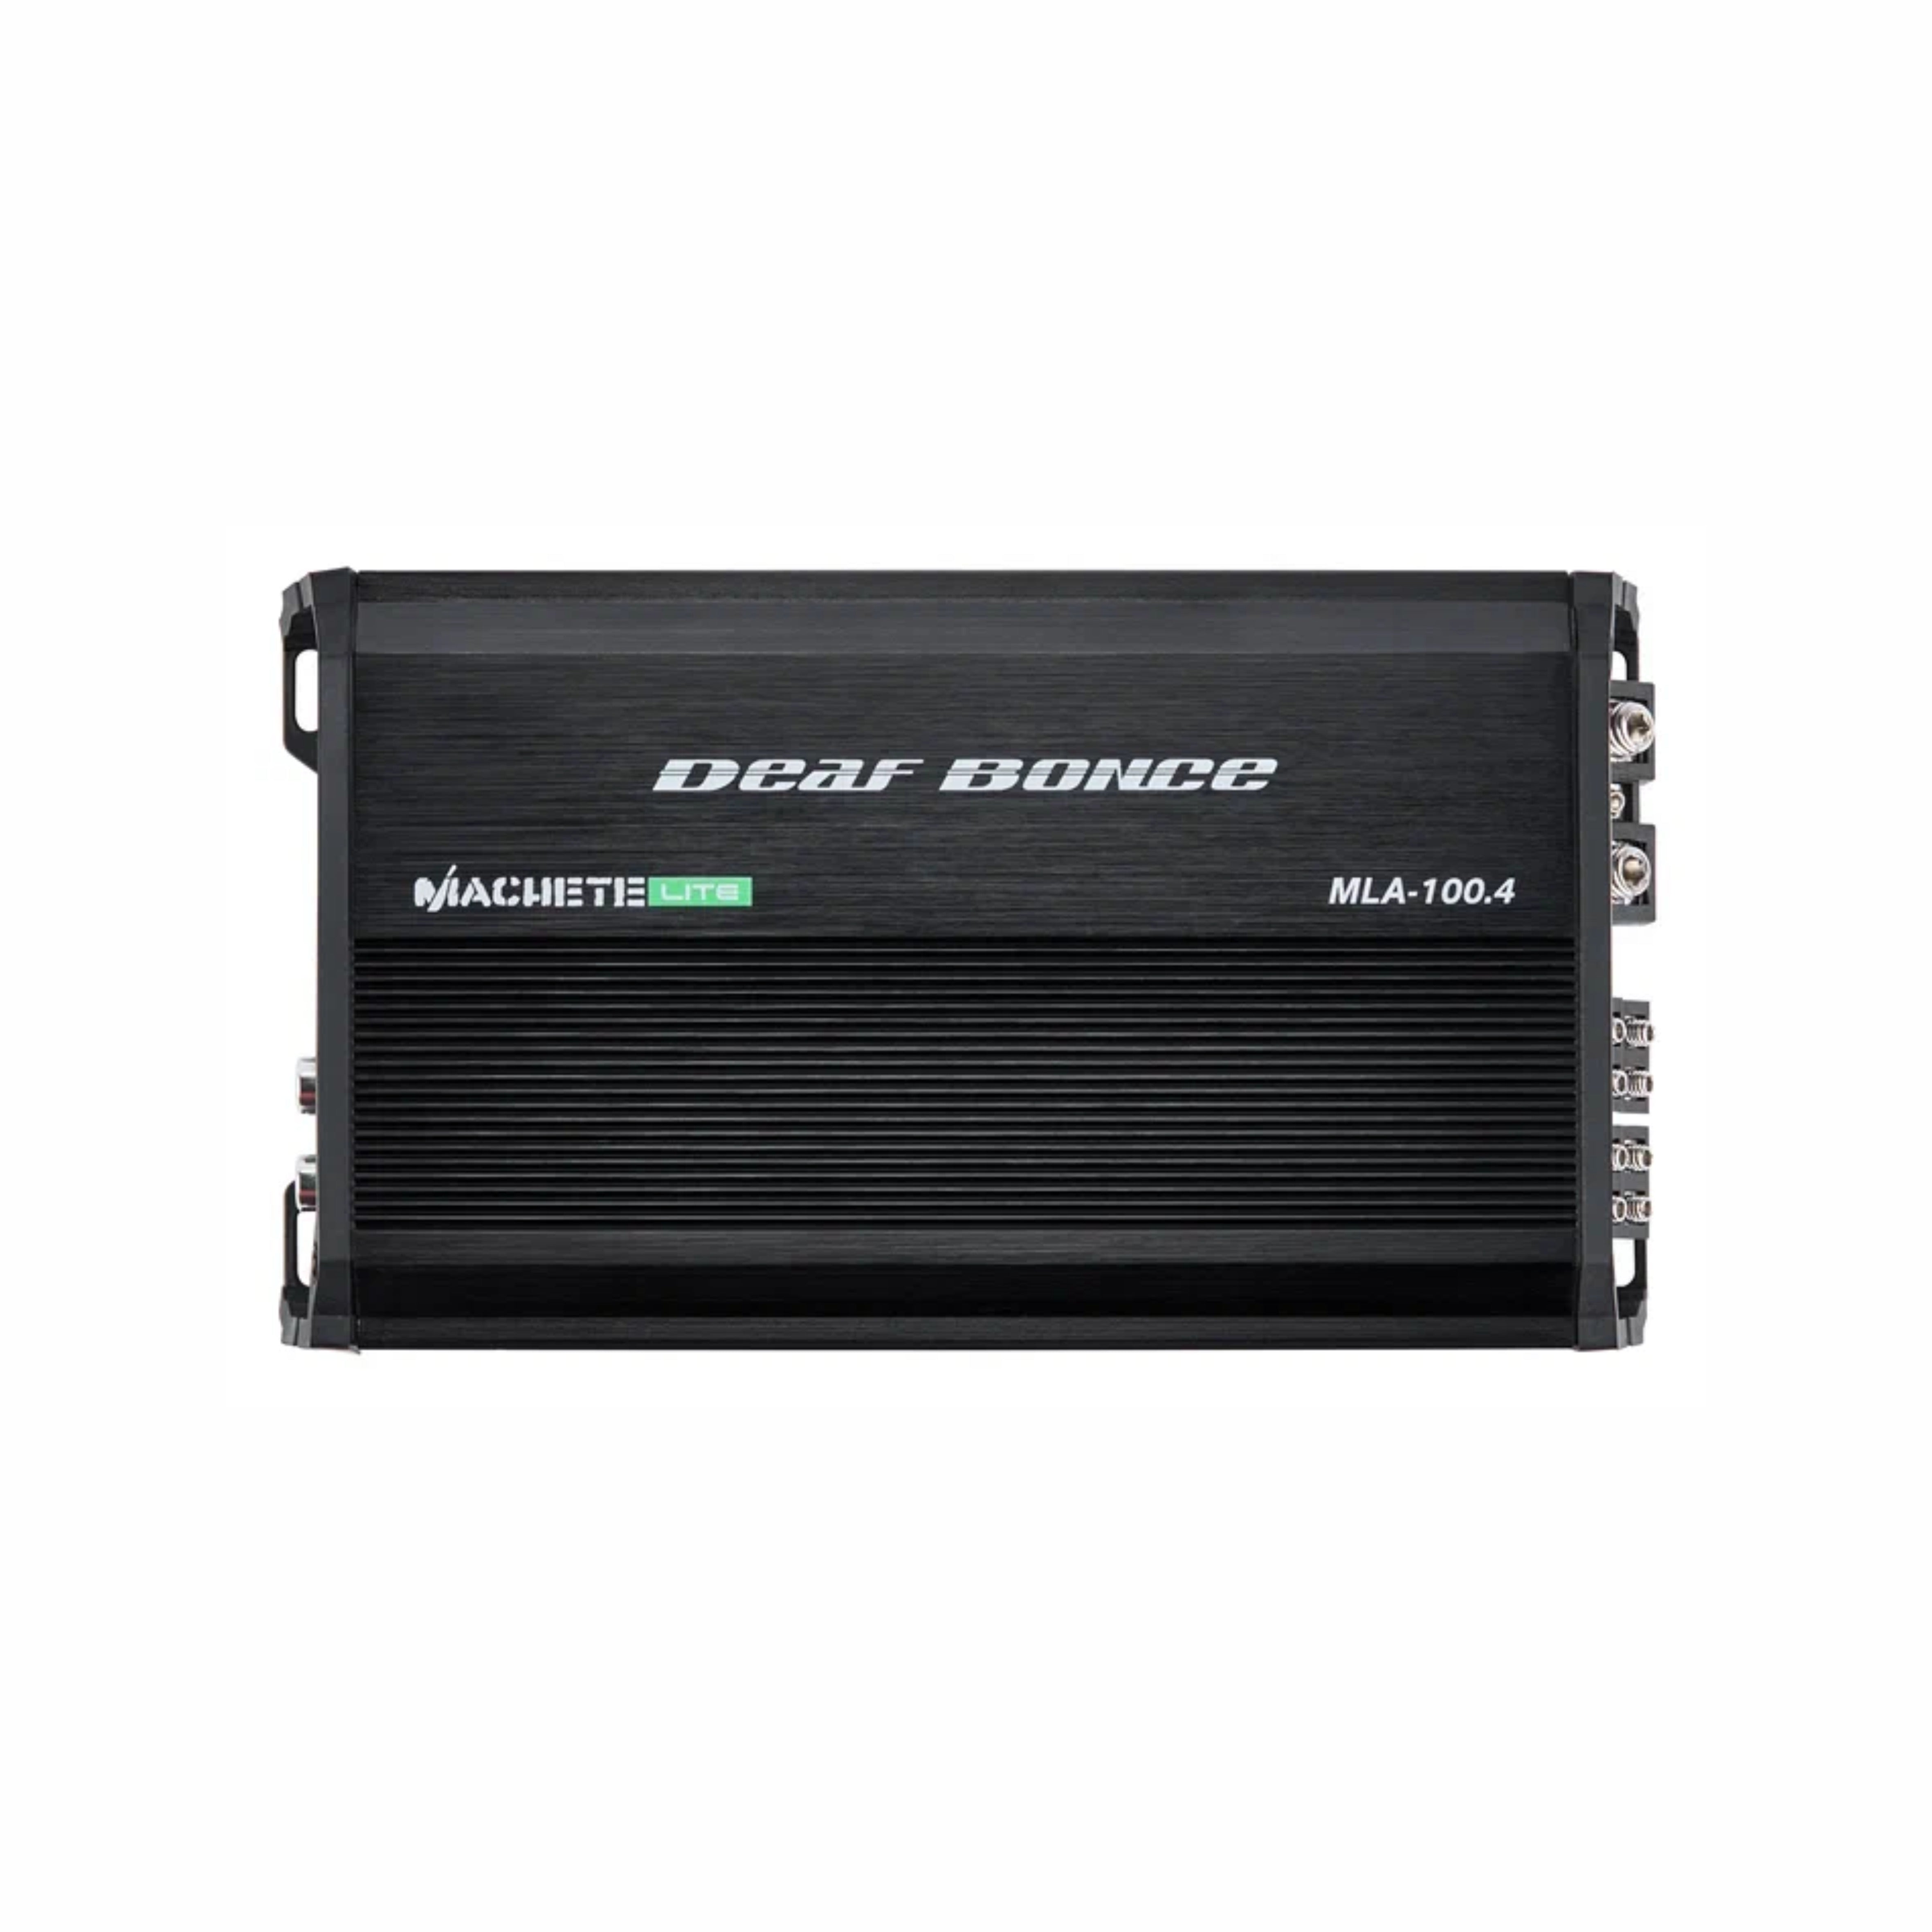 MACHETE MLA-100.4 | 100 Watt 4-channel amplifier – Deaf Bonce